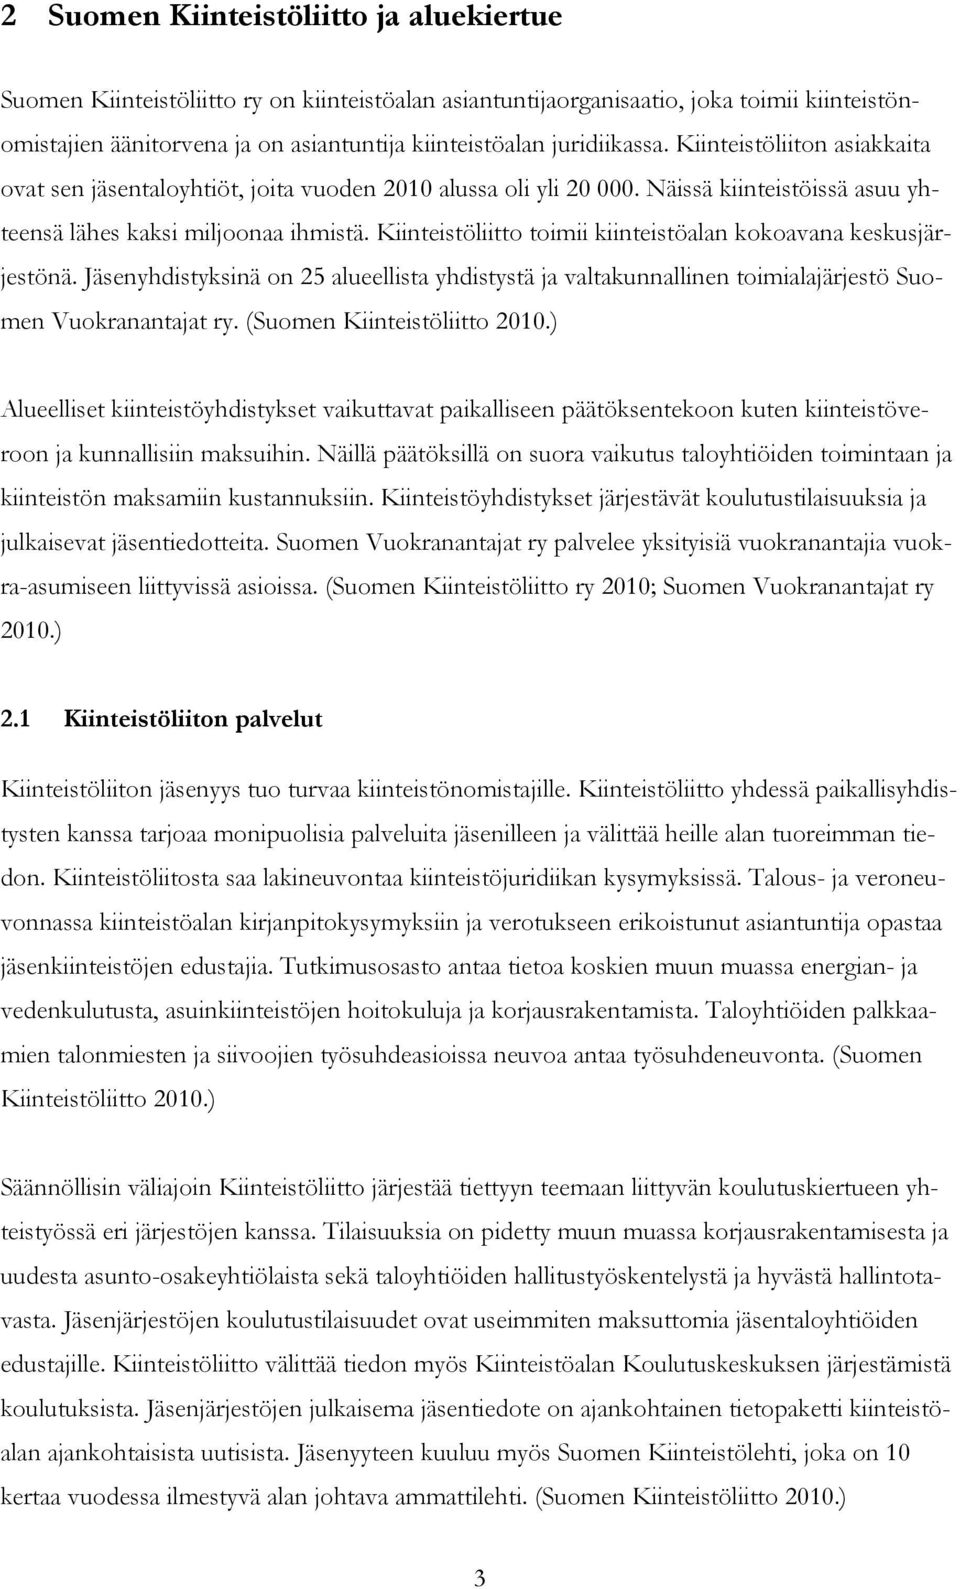 Kiinteistöliitto toimii kiinteistöalan kokoavana keskusjärjestönä. Jäsenyhdistyksinä on 25 alueellista yhdistystä ja valtakunnallinen toimialajärjestö Suomen Vuokranantajat ry.